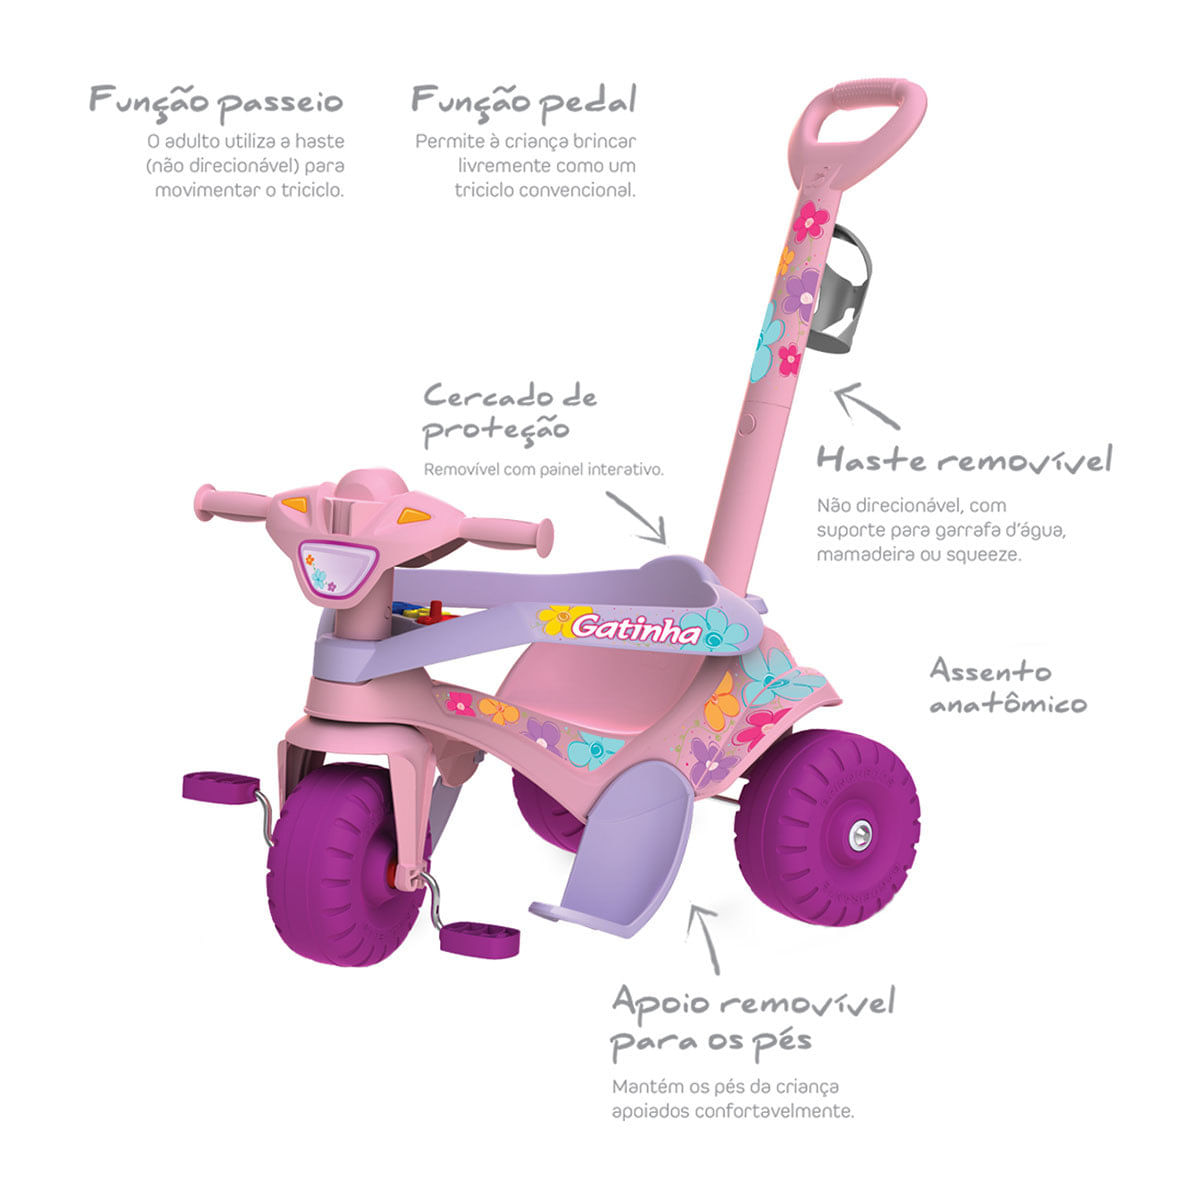 Triciclo Infantil com Empurrador Bandeirante Smart Comfort Rosa 257 -  Carrefour - Carrefour